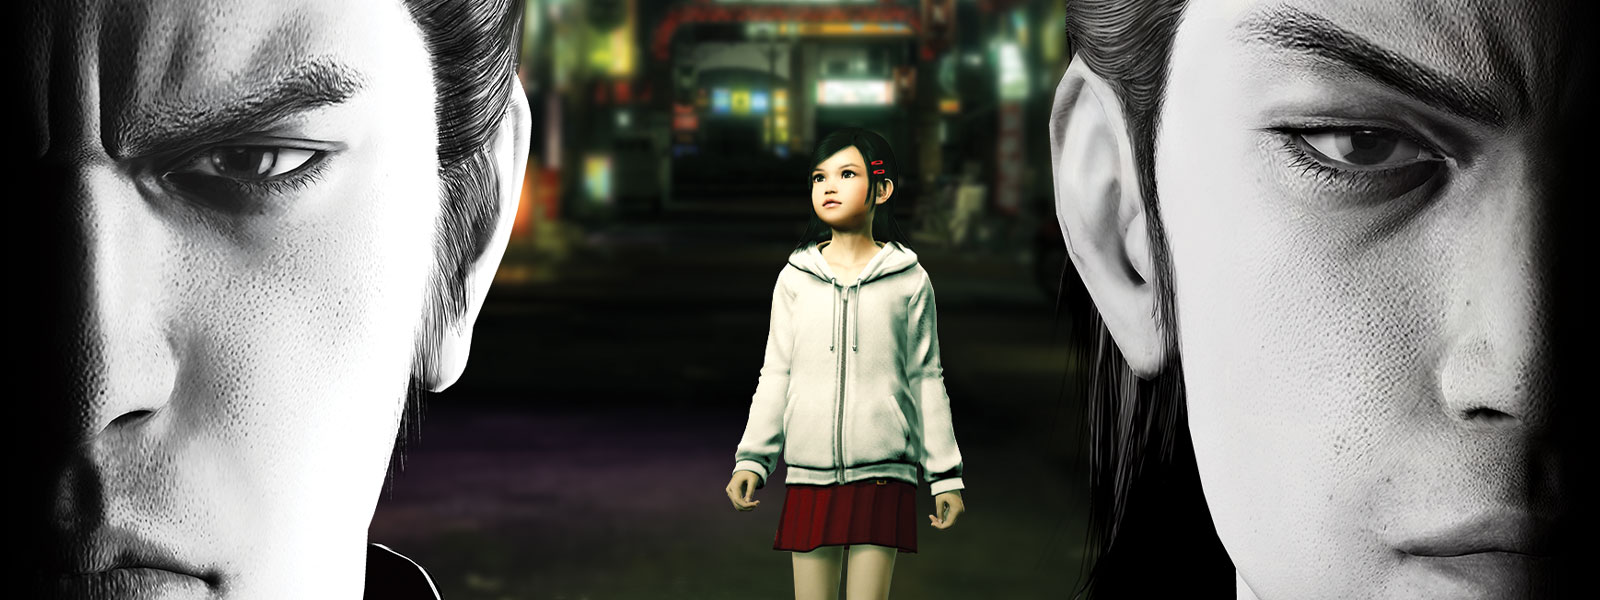 Deux personnages Yakuza regardent devant eux d'un air sombre, tandis qu'une petite fille se tient dans la ville derrière eux.